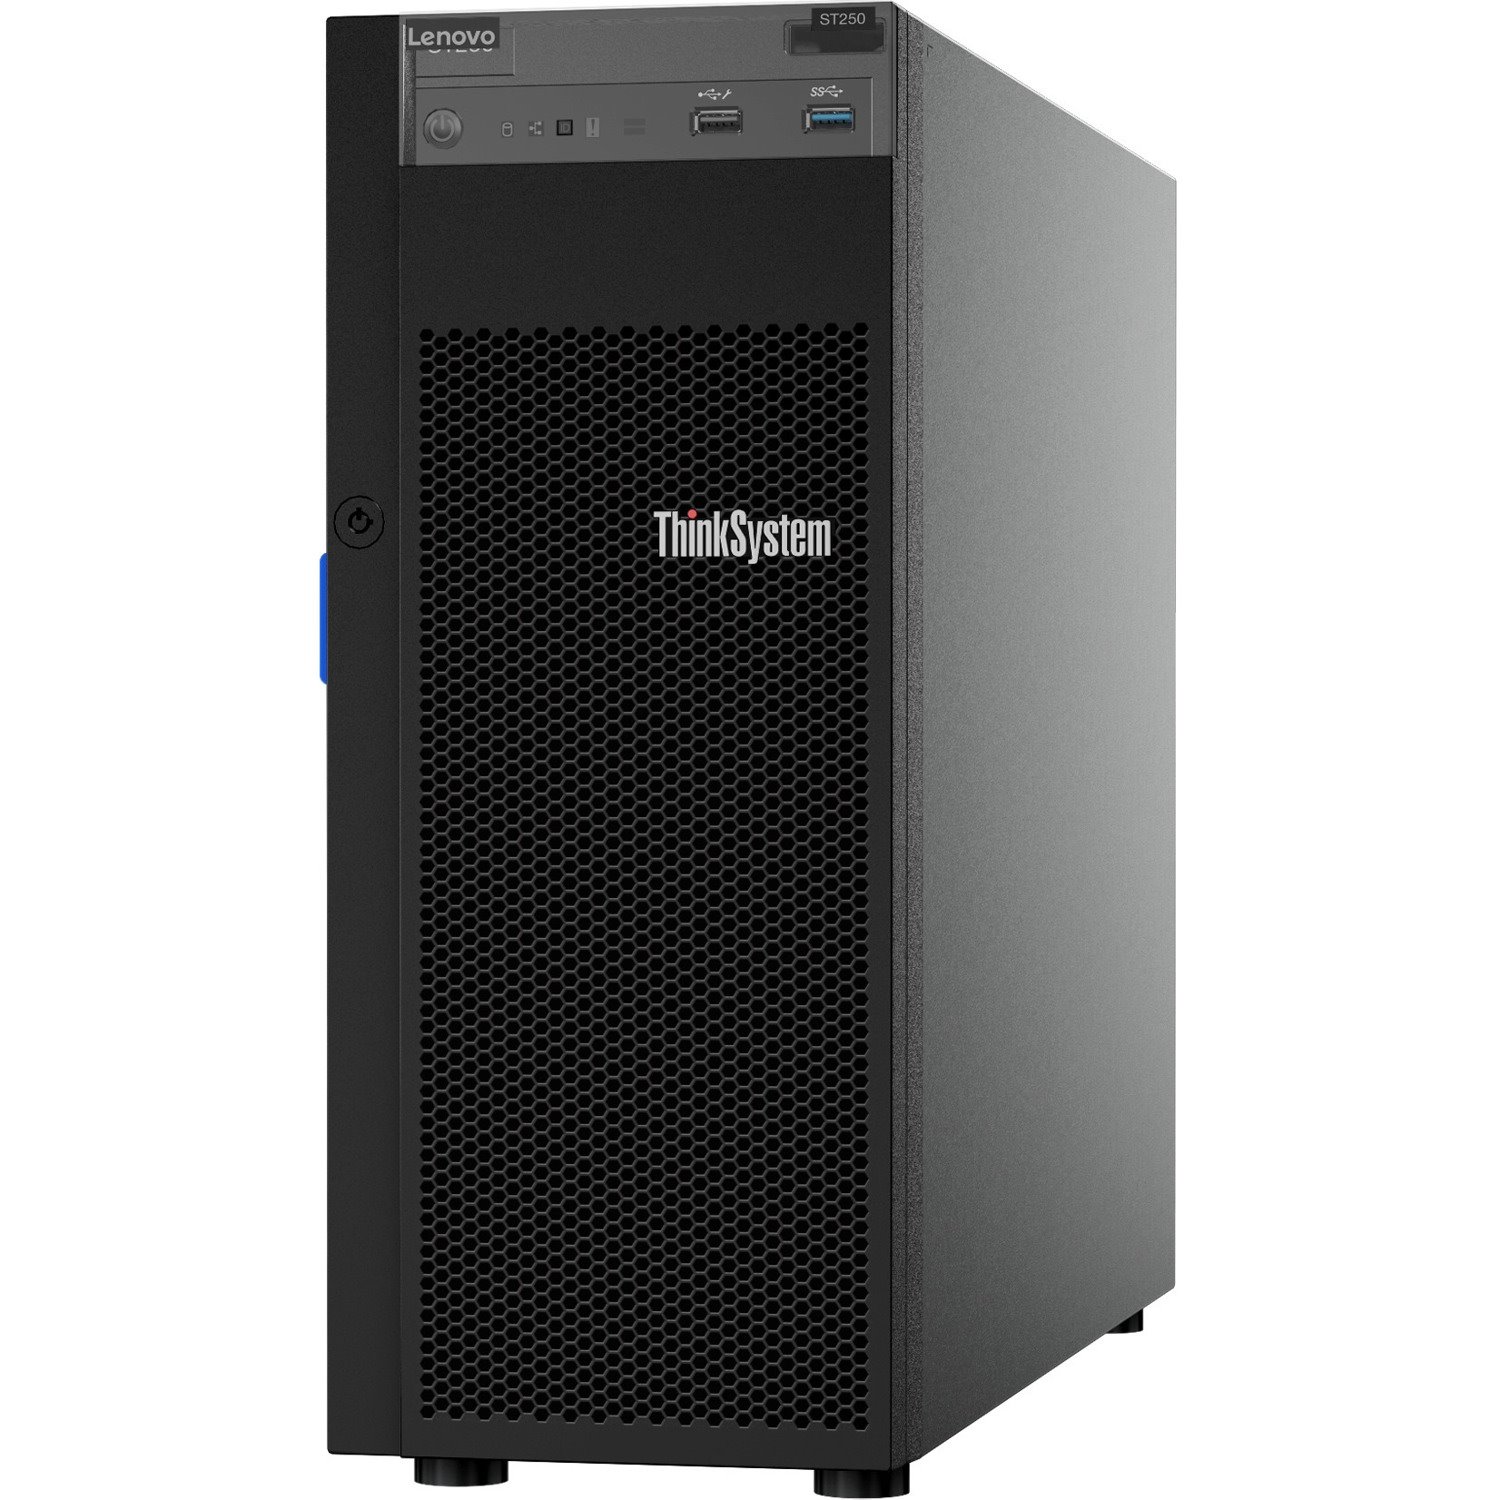 Lenovo ThinkSystem ST250 7Y45A01PAU 4U Tower Server - 1 x Intel Xeon E-2144G 3.60 GHz - 16 GB RAM - Serial ATA/600 Controller